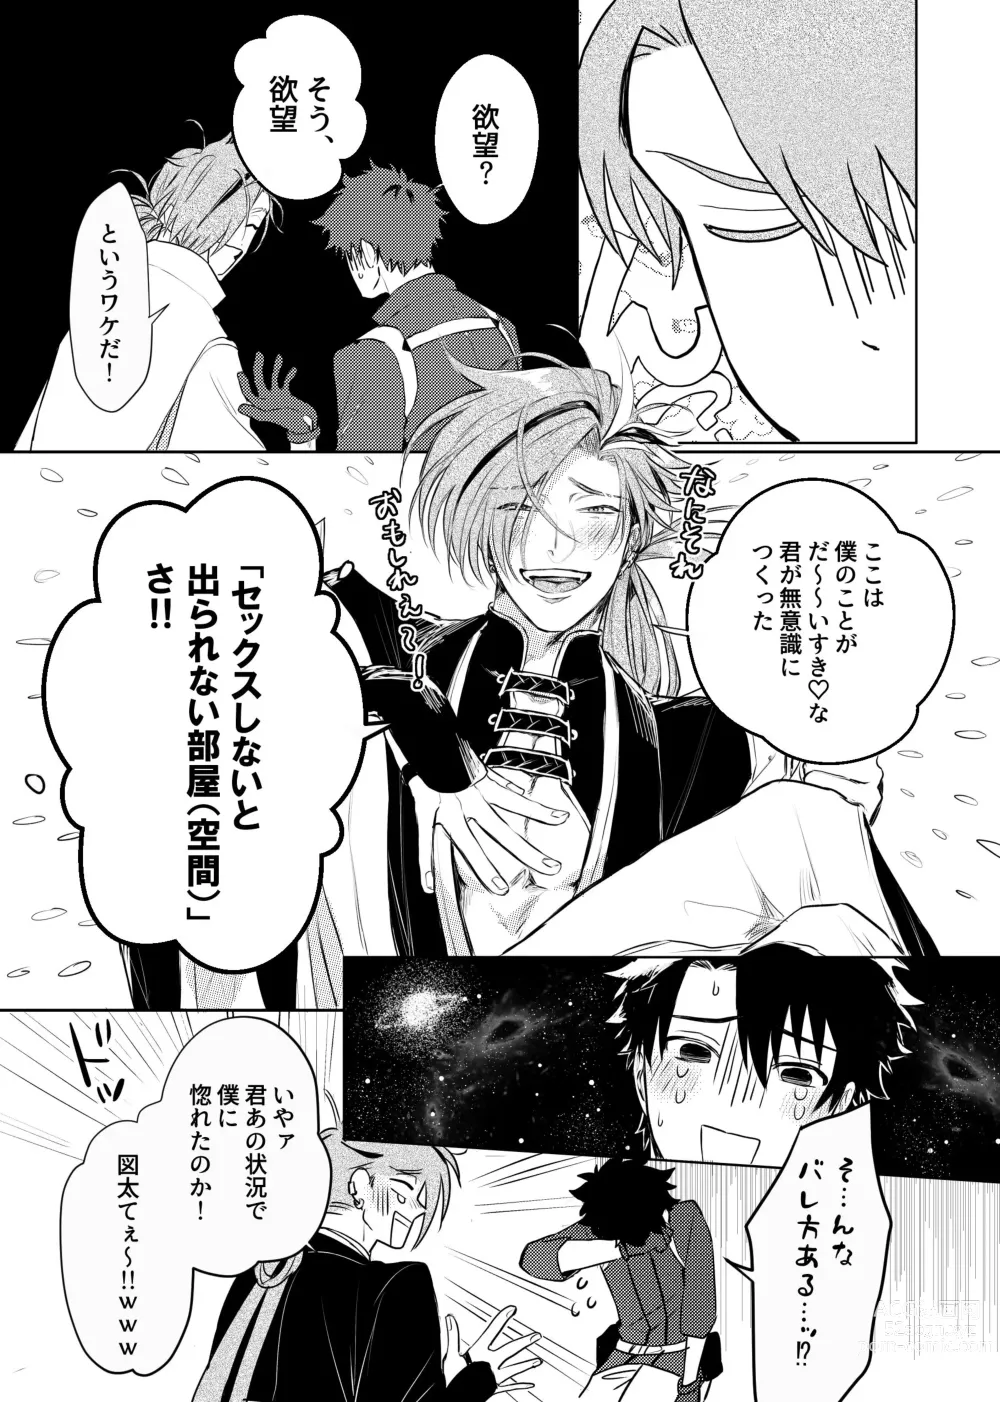 Page 6 of doujinshi Konna Hazude wa!